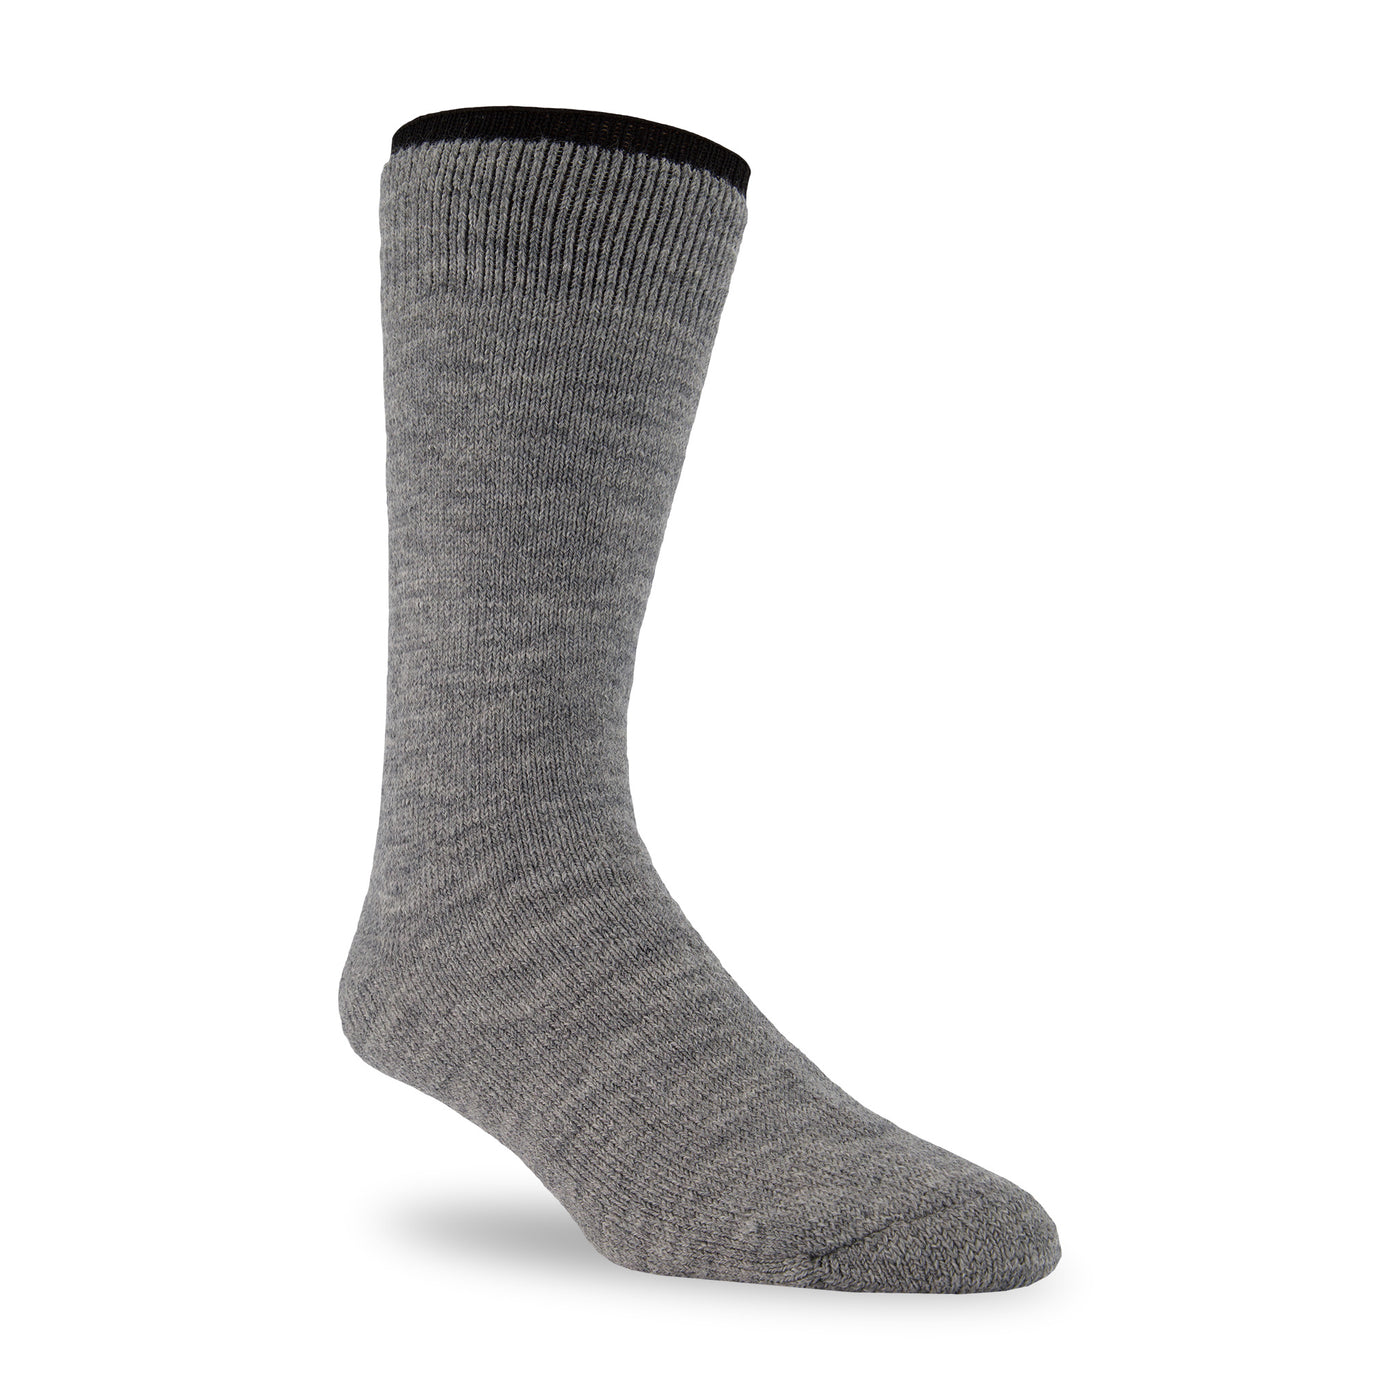 merino wool socks for winter